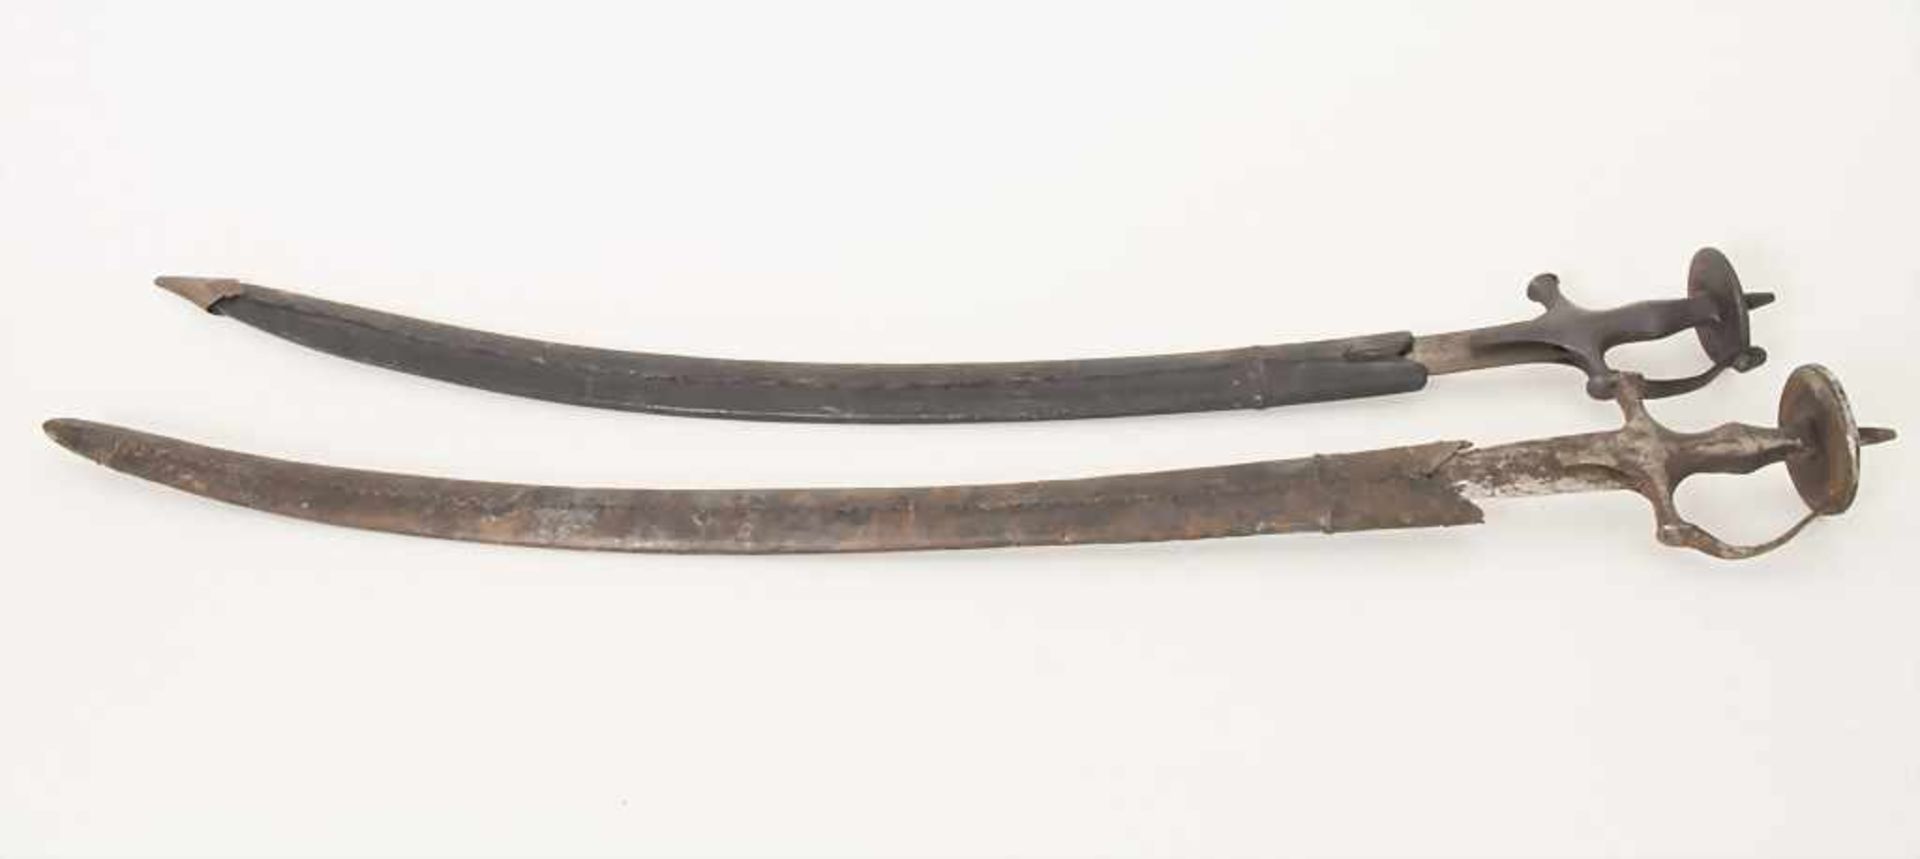 2 Säbel / A pair of sabers, wohl osmanisch, 18./19.Jh.Material: Klingen und Griff aus Schmiedeeisen, - Bild 4 aus 6